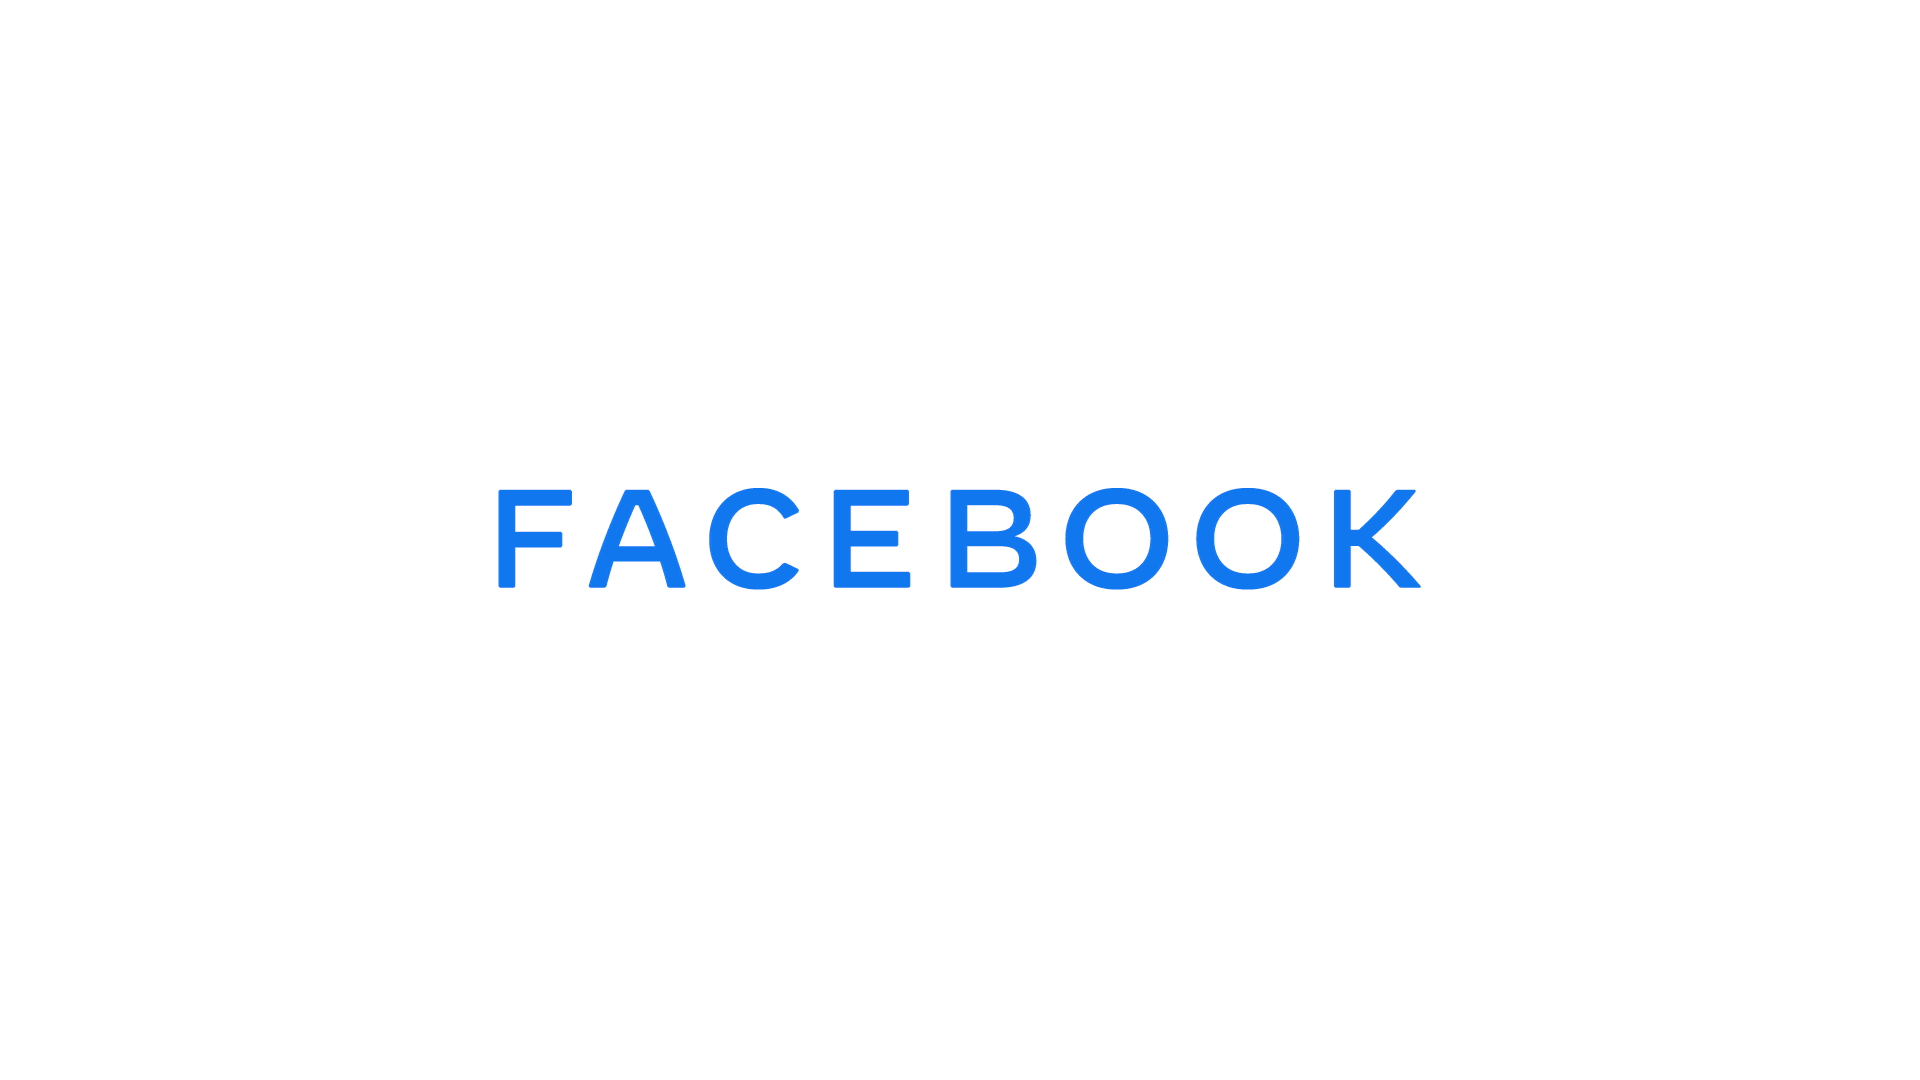 Brandaktuell: Facebook erscheint mit neuem LOGO 4